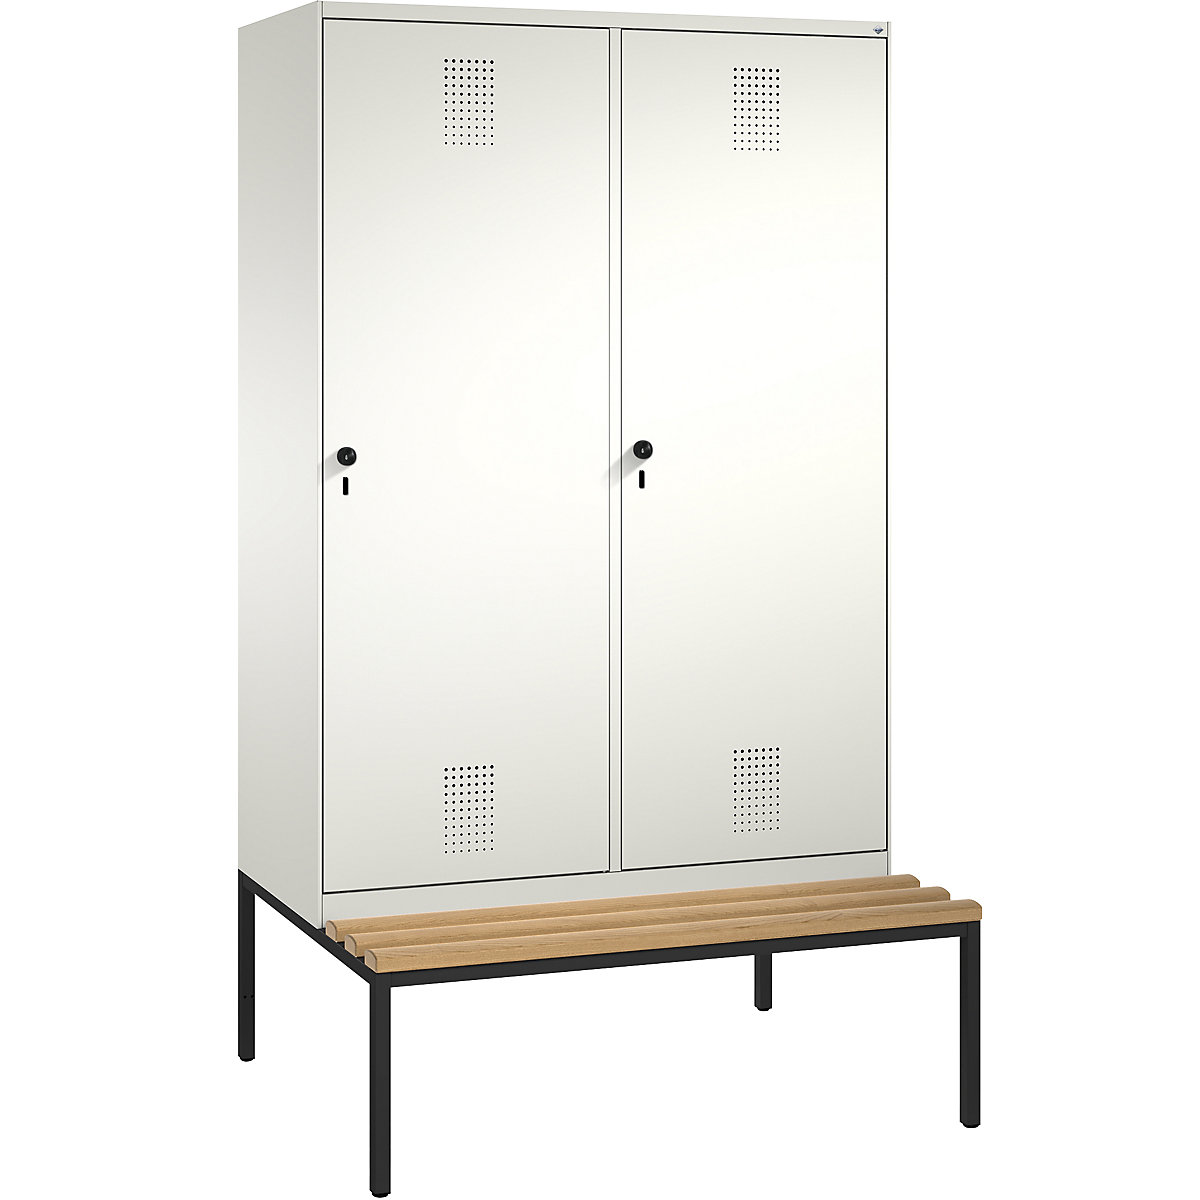 Šatní skříň s lavicí EVOLO s dveřmi přes 2 oddíly – C+P, 4 oddíly, 2 dveře, šířka oddílu 300 mm, čistá bílá / čistá bílá-3